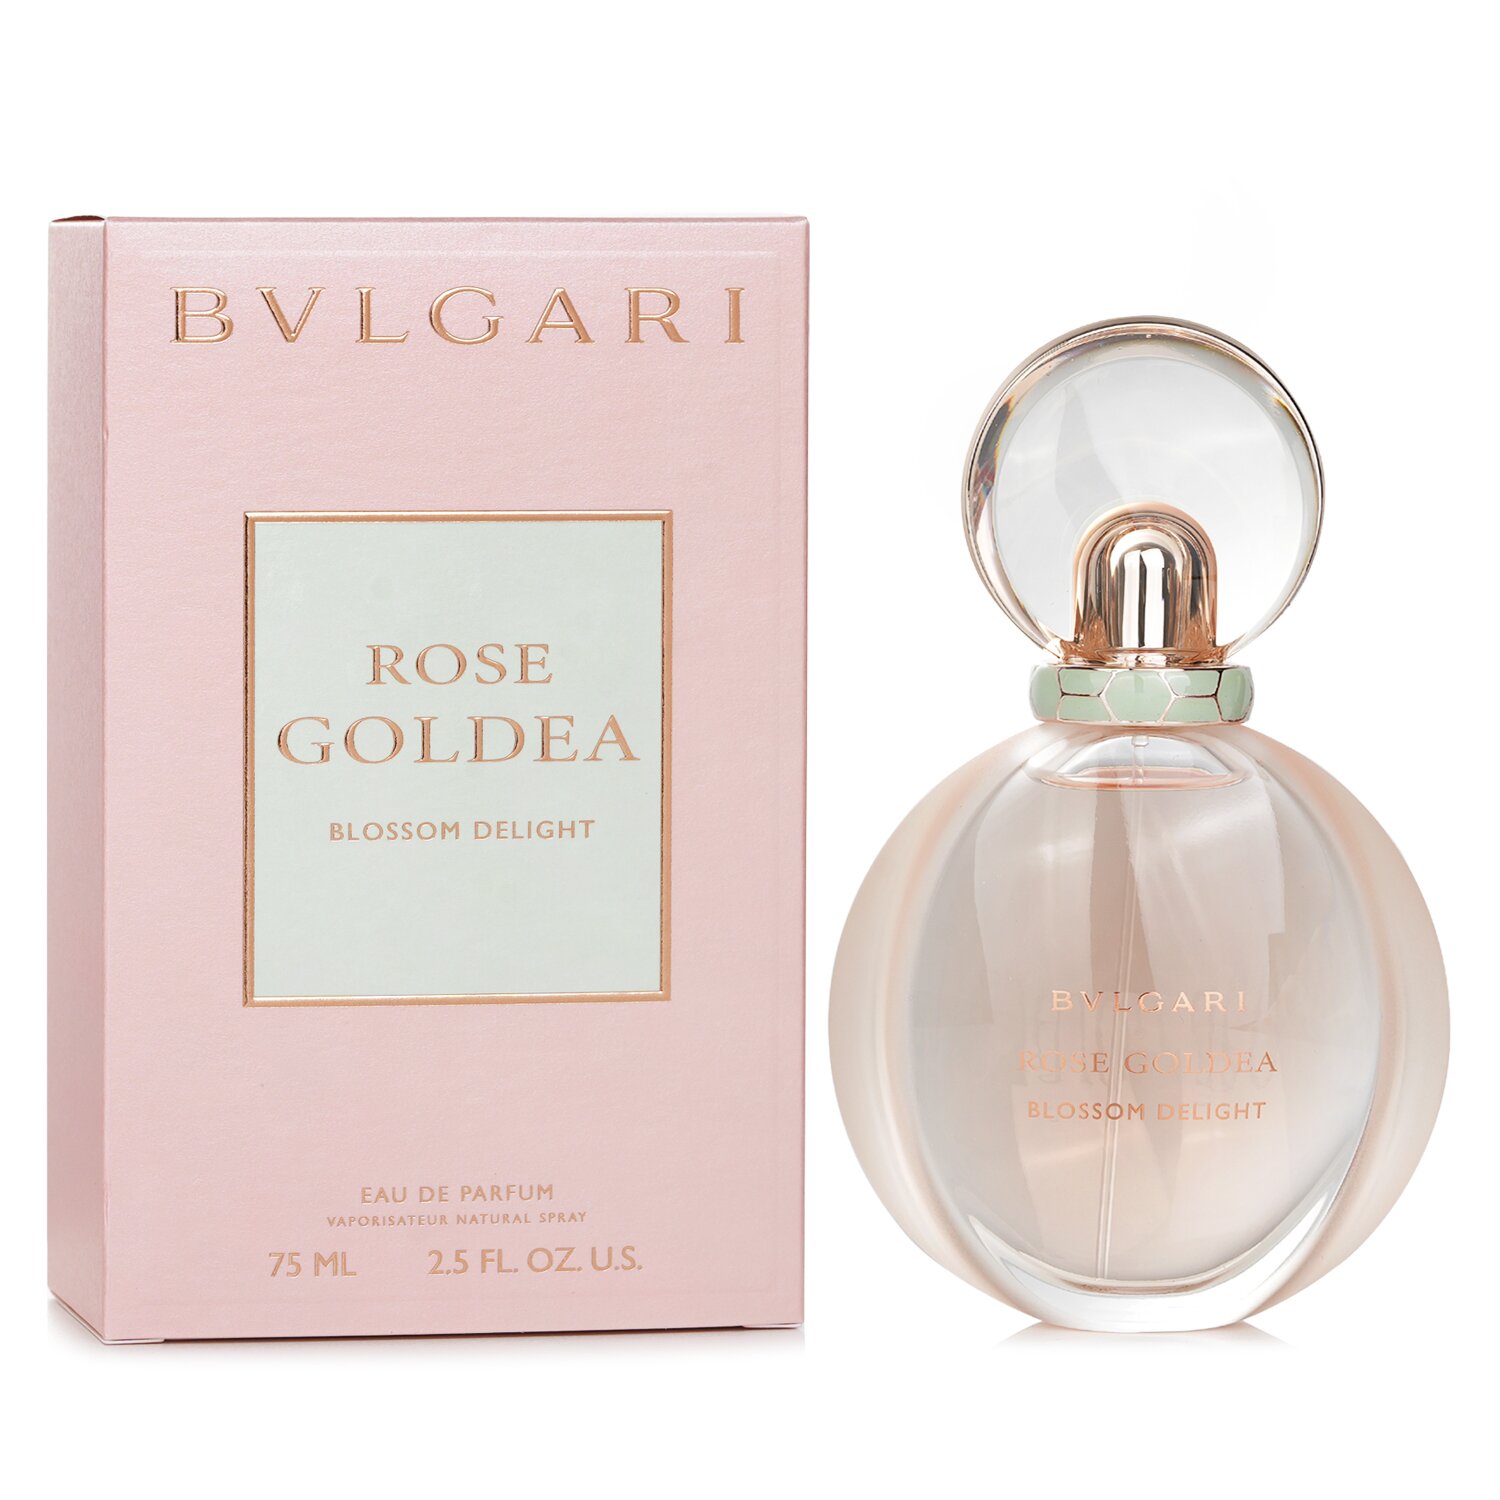 Bvlgari Rose Goldea Blossom Delight Eau De Parfum Spray 75ml/2.5oz